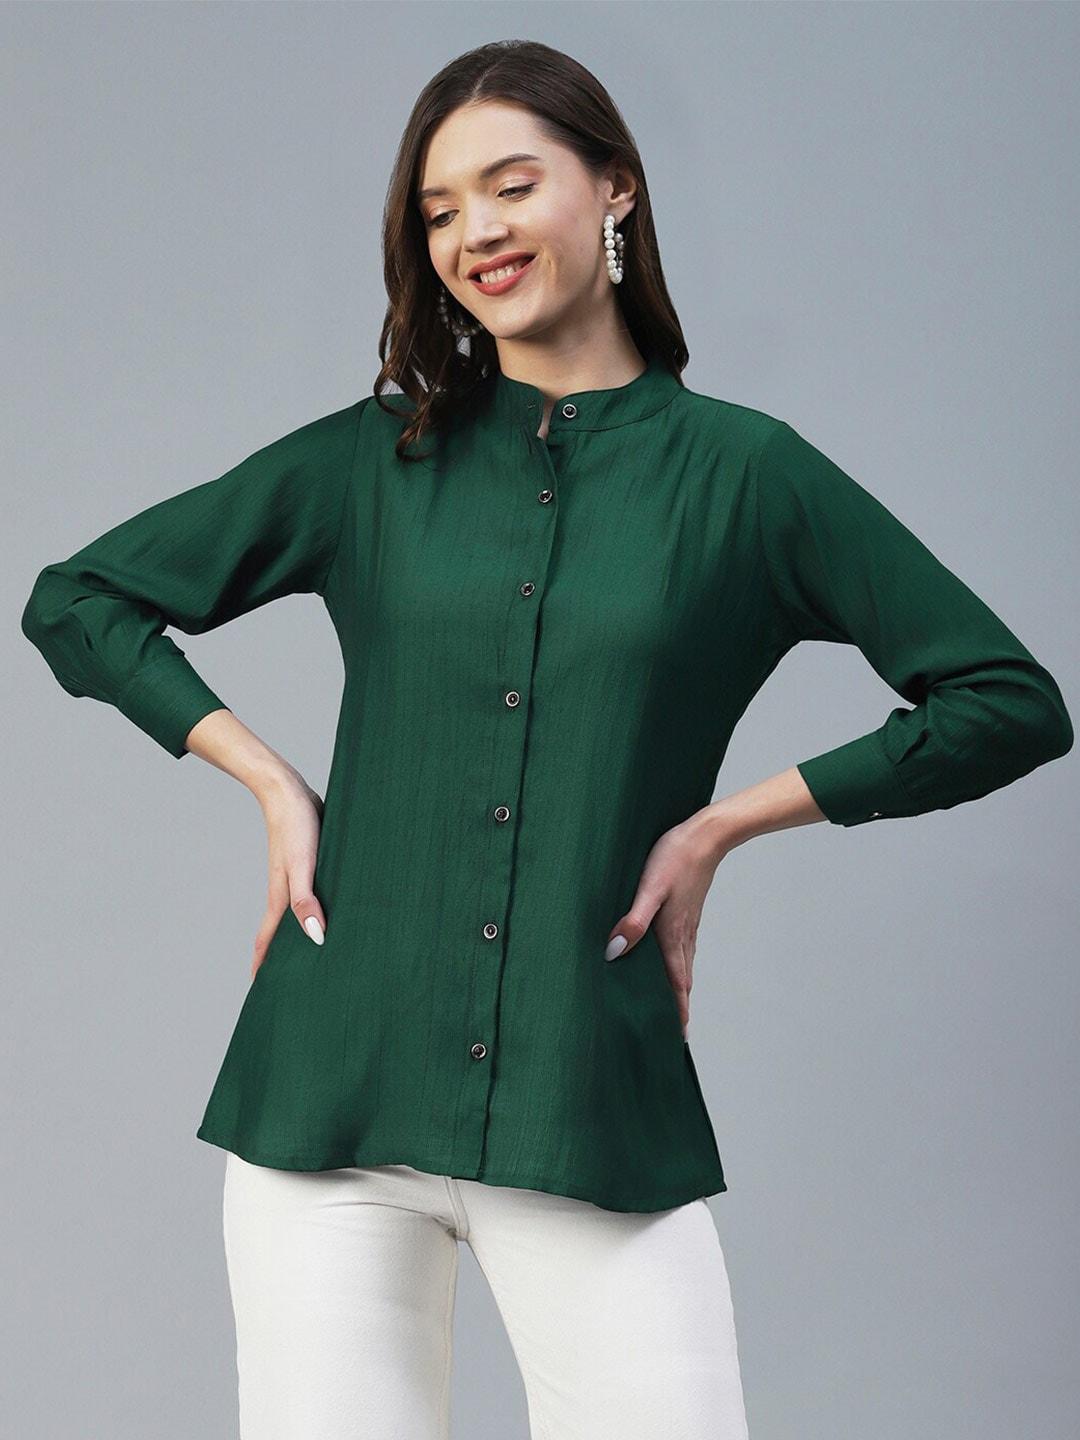 18 ATTITUDE Mandarin Collar Semiformal Shirt